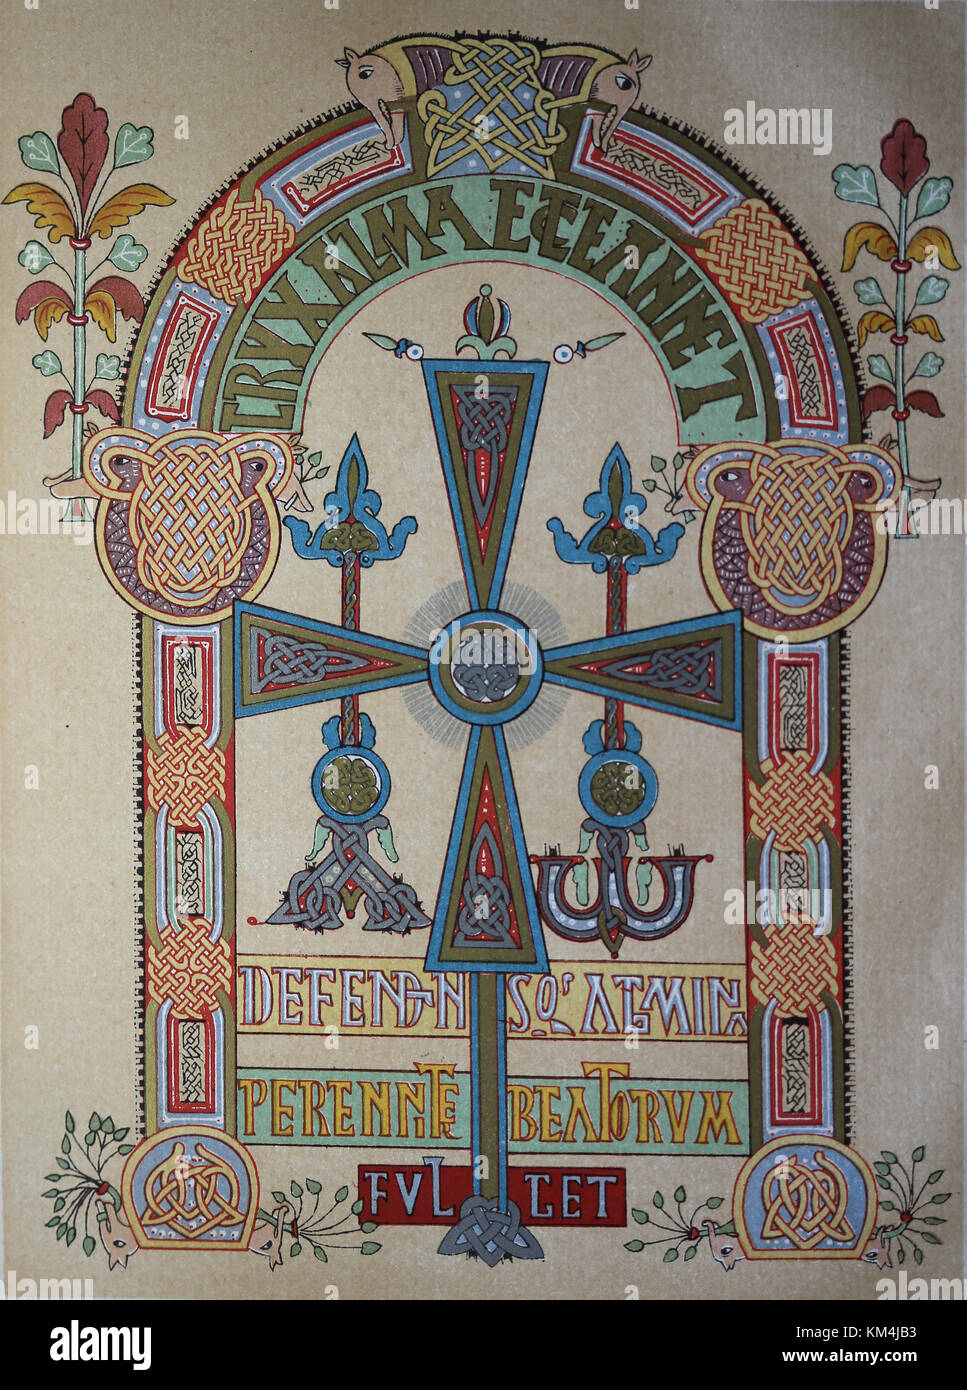 vorromanische und Mozarabas. Codex Vigilanus. Version von Chronicon Albeldense, 976. Westgotische Kreuz. Replikat. Spanien. Stockfoto